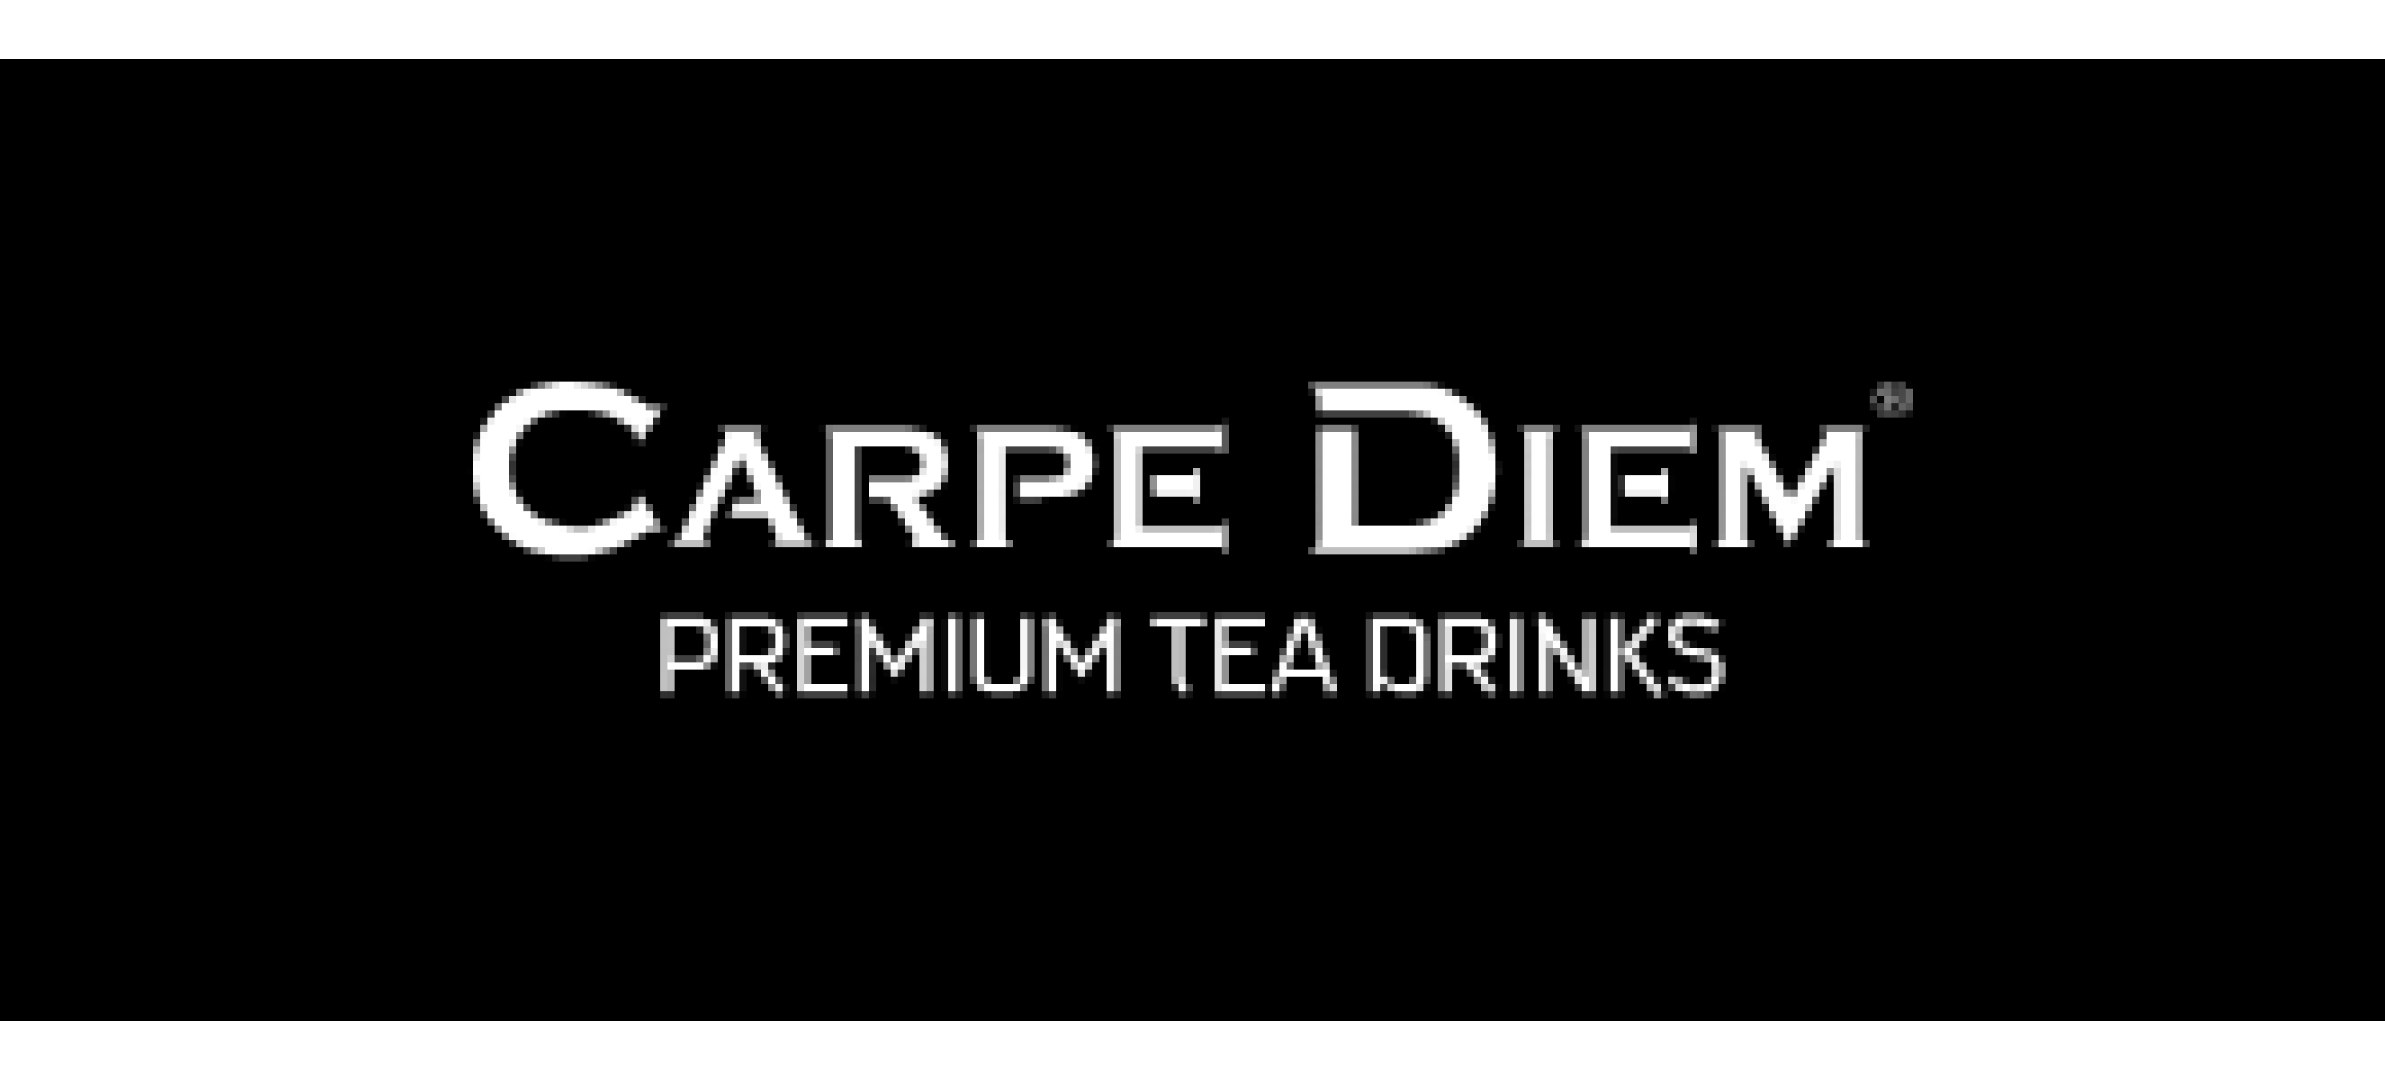 Carpe Diem Premium Tea Drinks